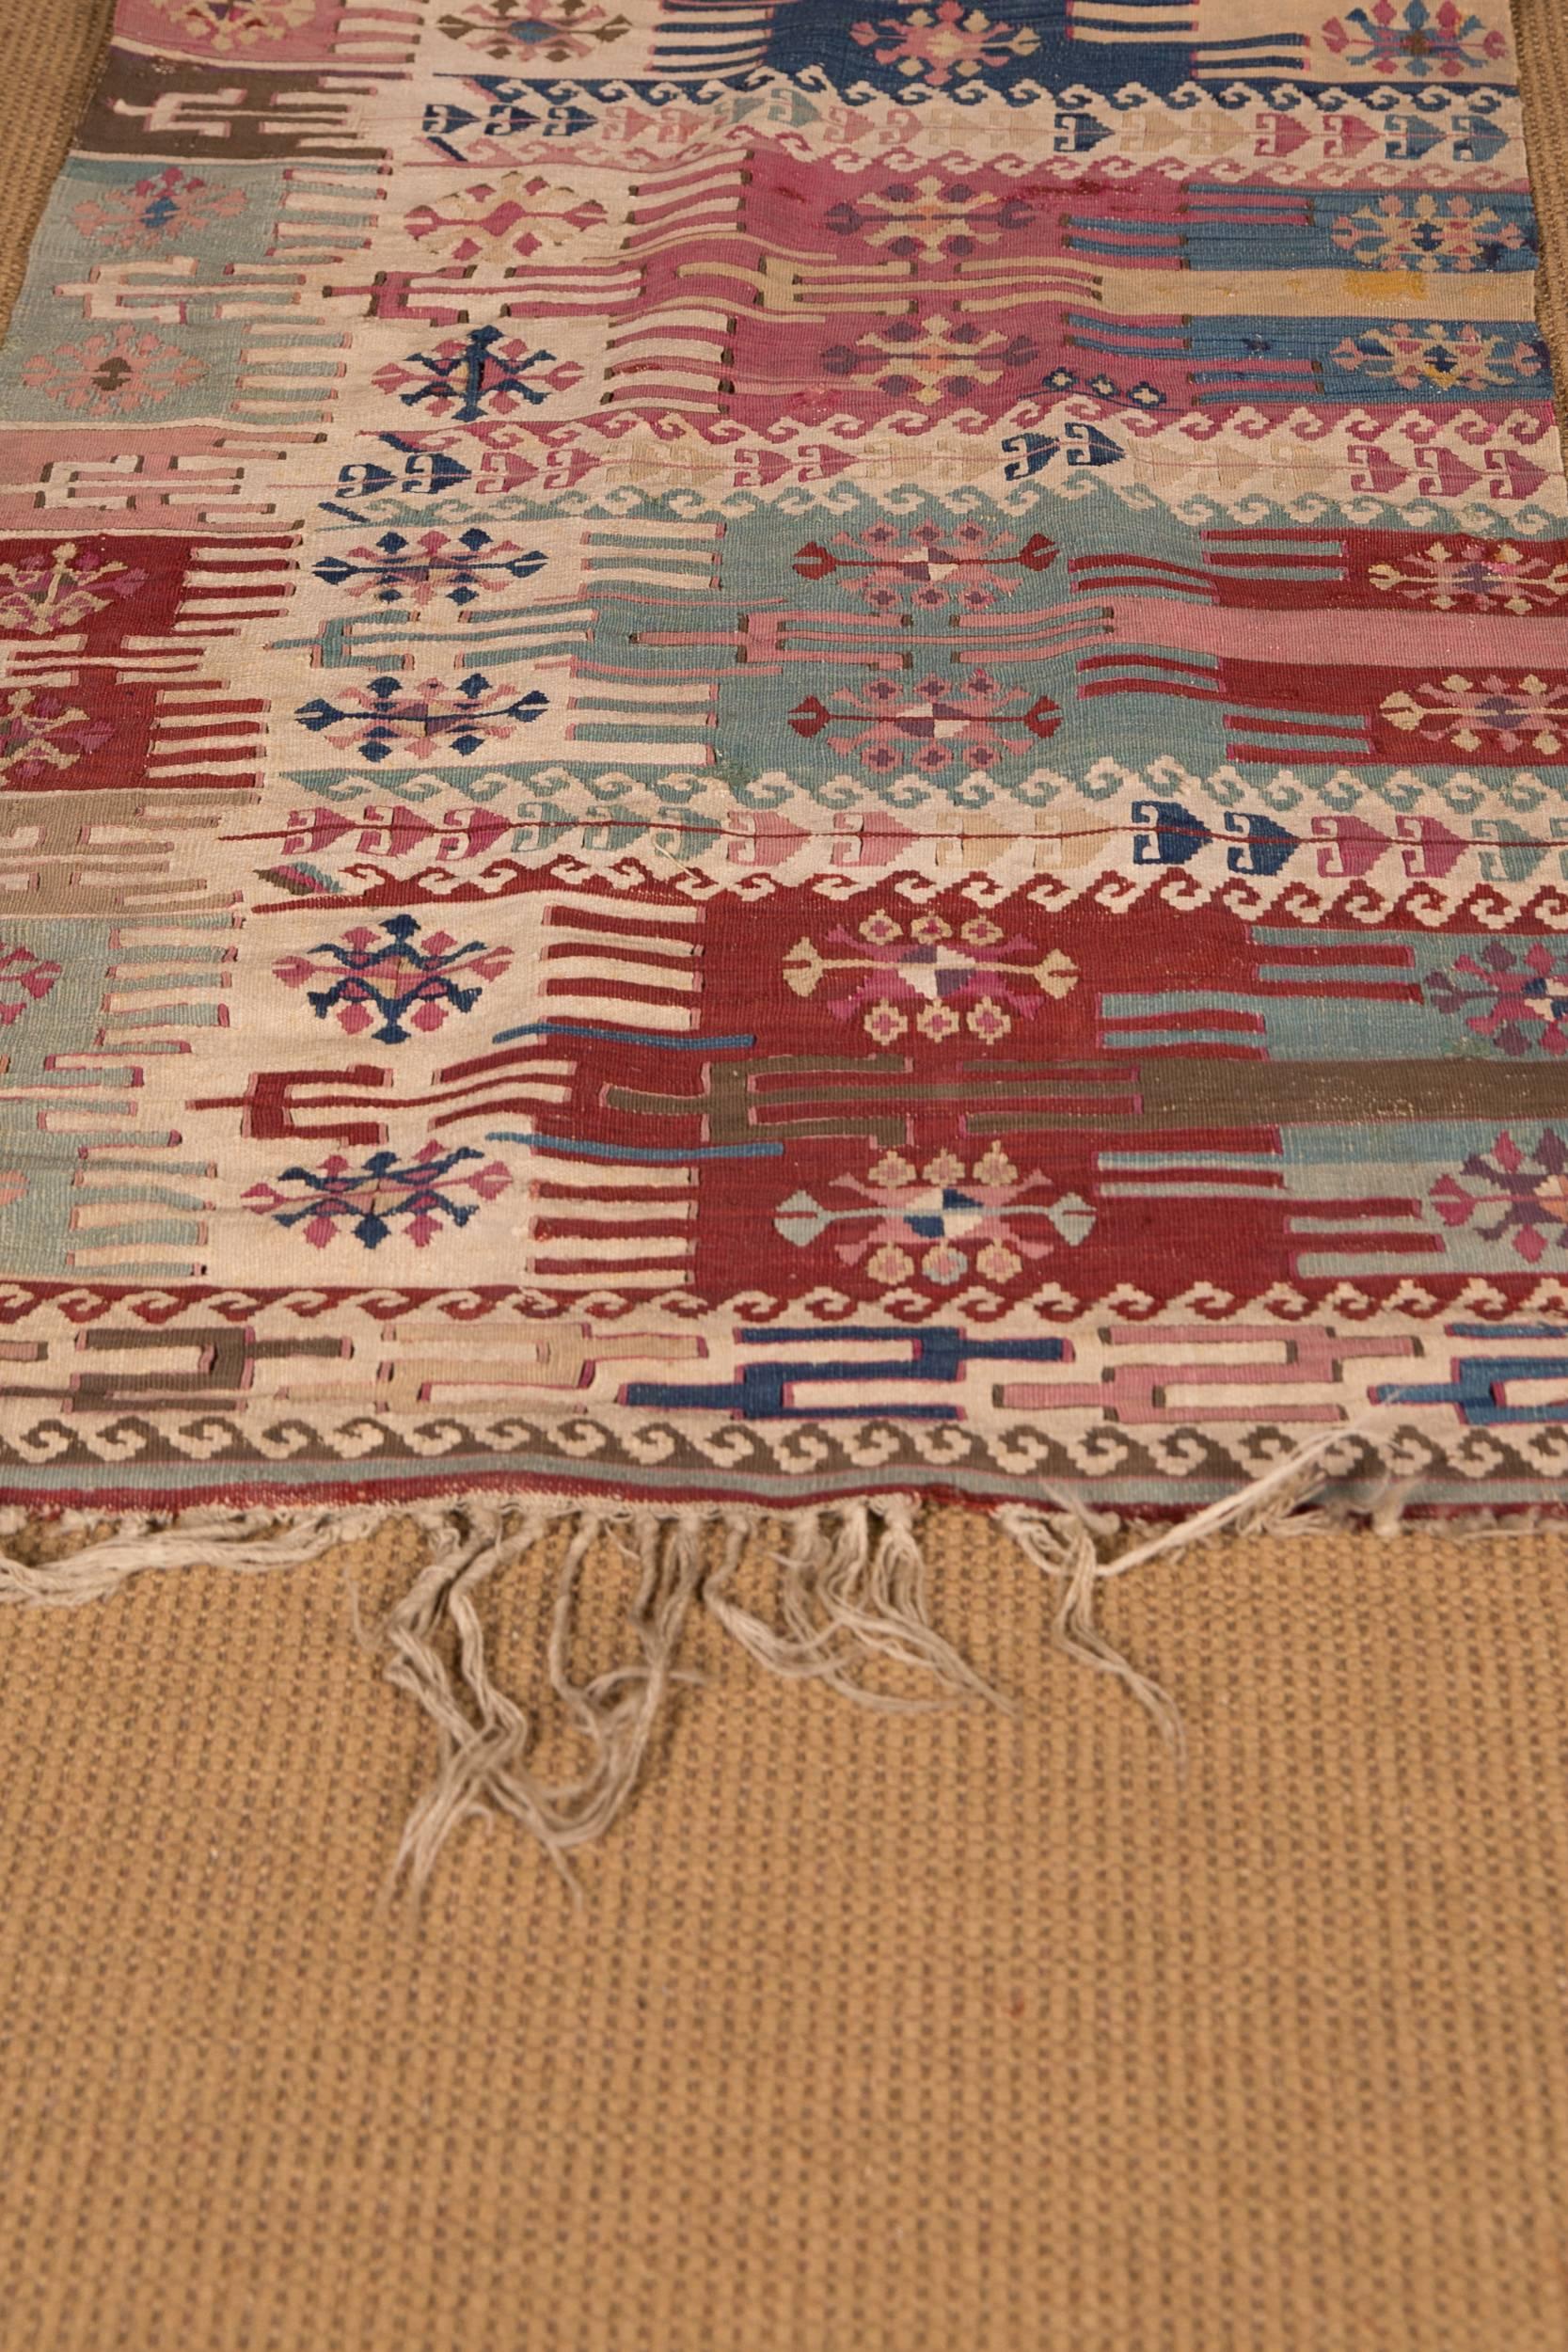 Turkmen 19th Century Antique Gallery Turkish Kilim Carpet